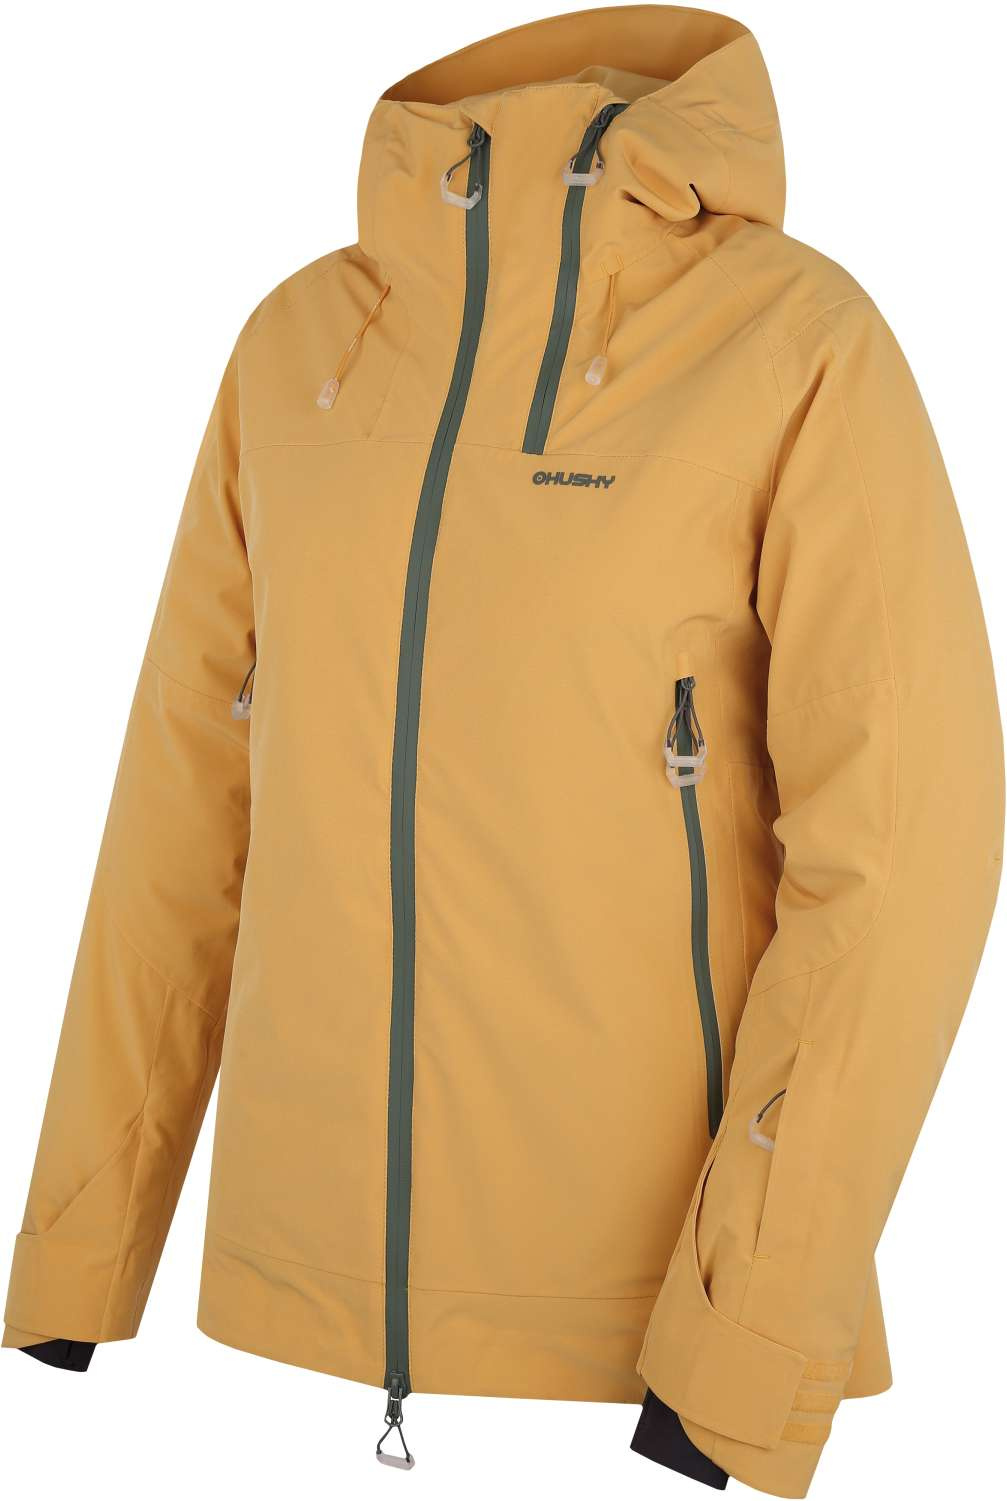 Husky Dámská lyžařská plněná bunda Gambola L lt. yellow Velikost: S dámská bunda